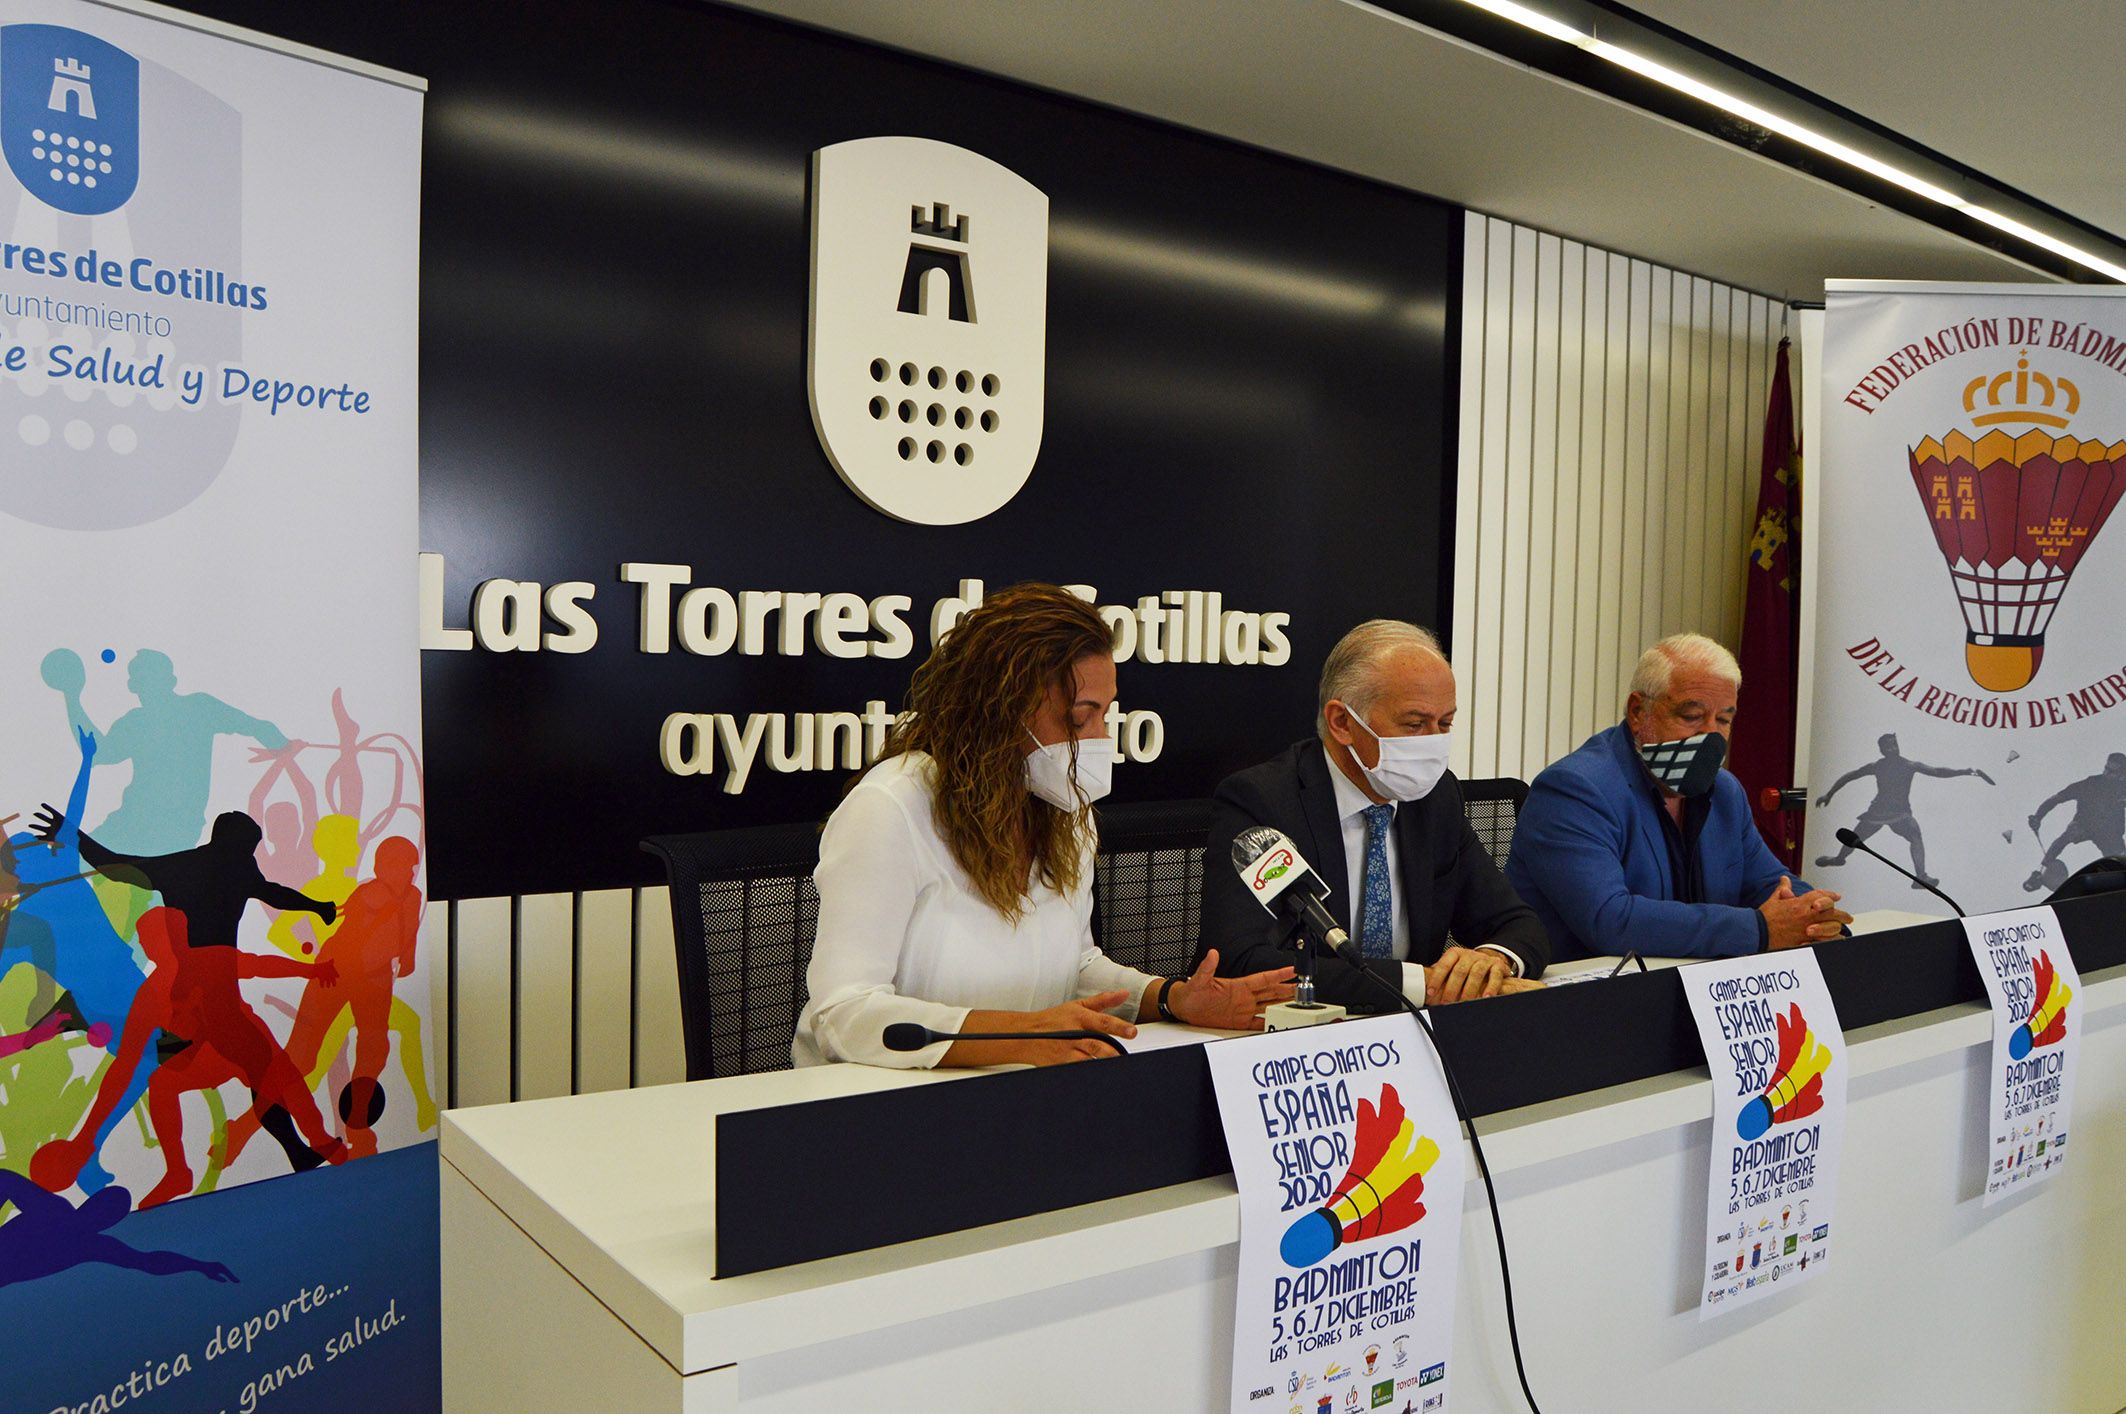 148 deportistas se darán cita en Las Torres de Cotillas para el campeonato nacional senior de bádminton3